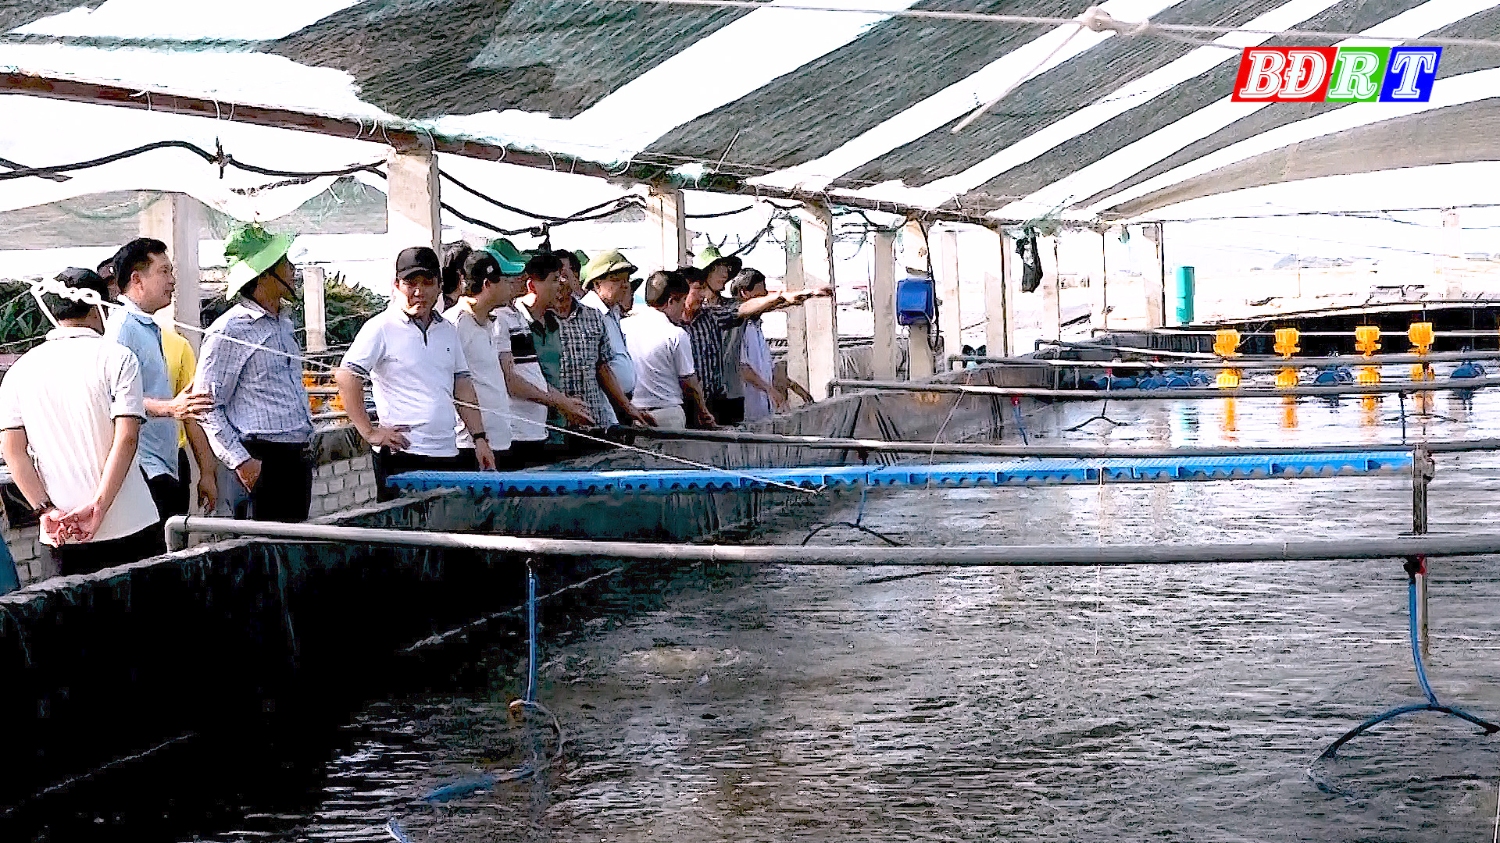 Tham quan, học hỏi kinh nghiệm tại khu cung cấp, nuôi trồng thủy sản của Bộ Nông nghiệp phát triển nông thôn tại xã Thanh Thủy, thị xã Nghi Sơn, tỉnh Thanh Hóa